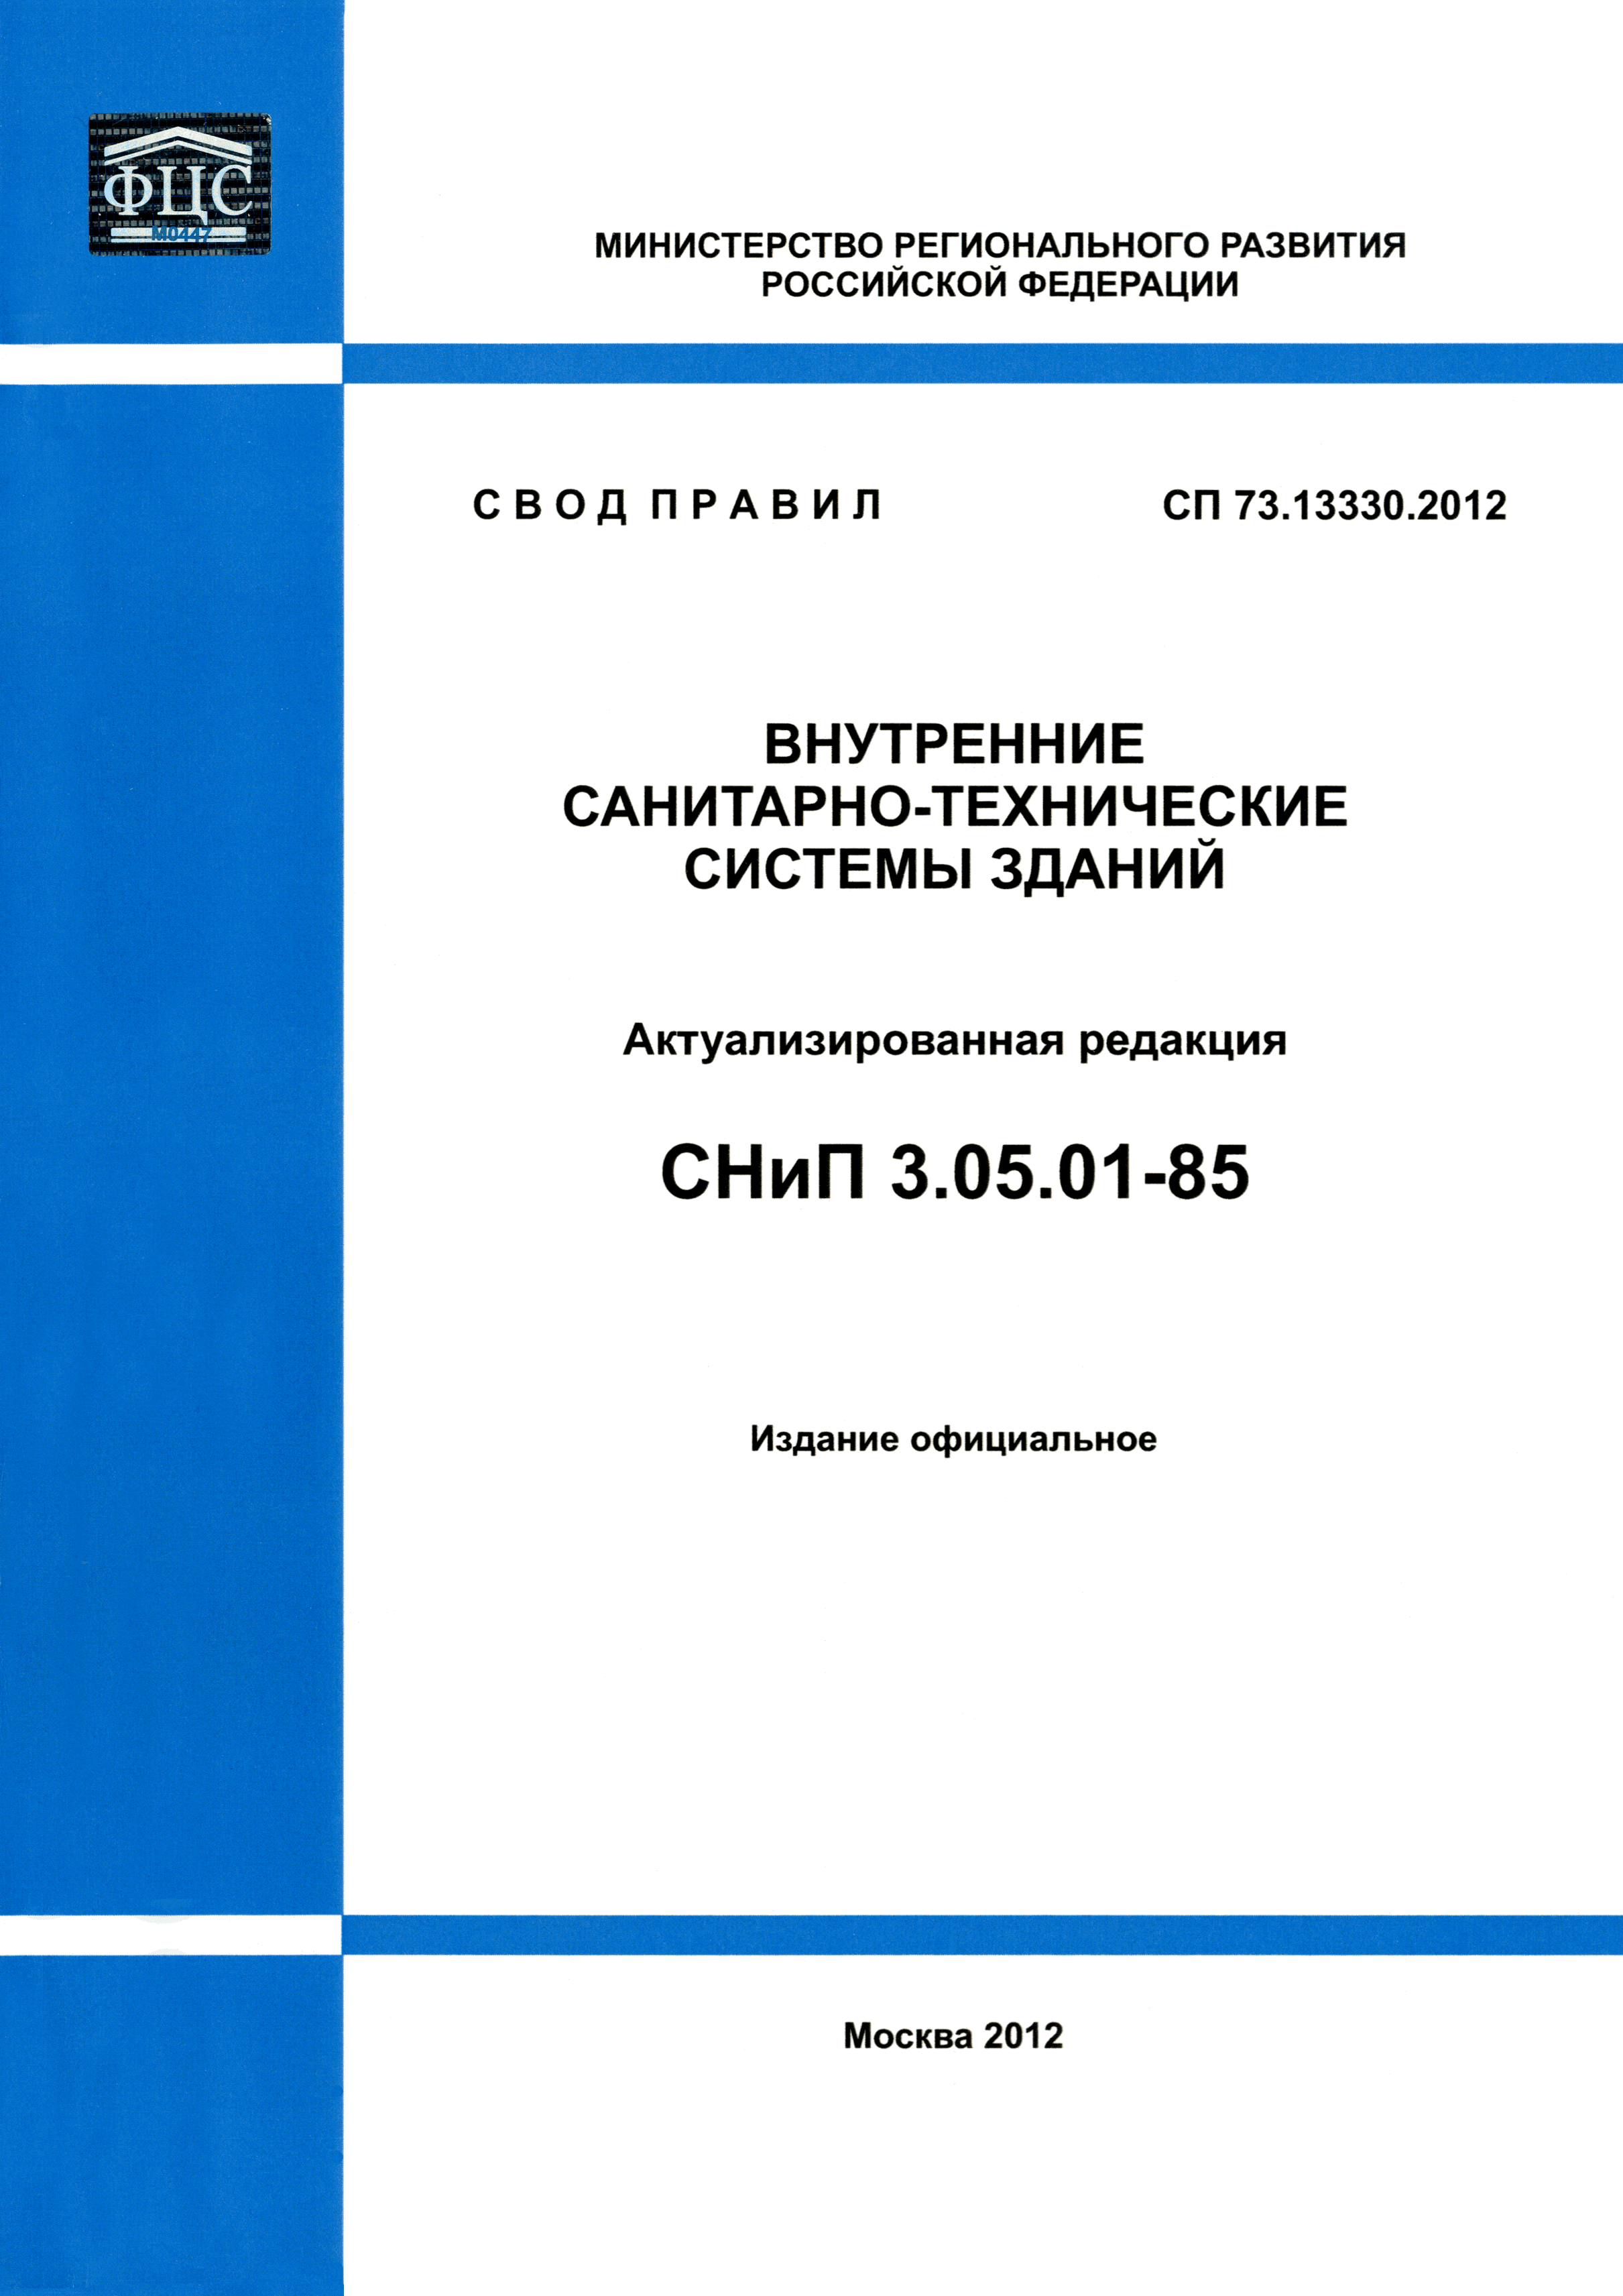 СП 73.13330.2012